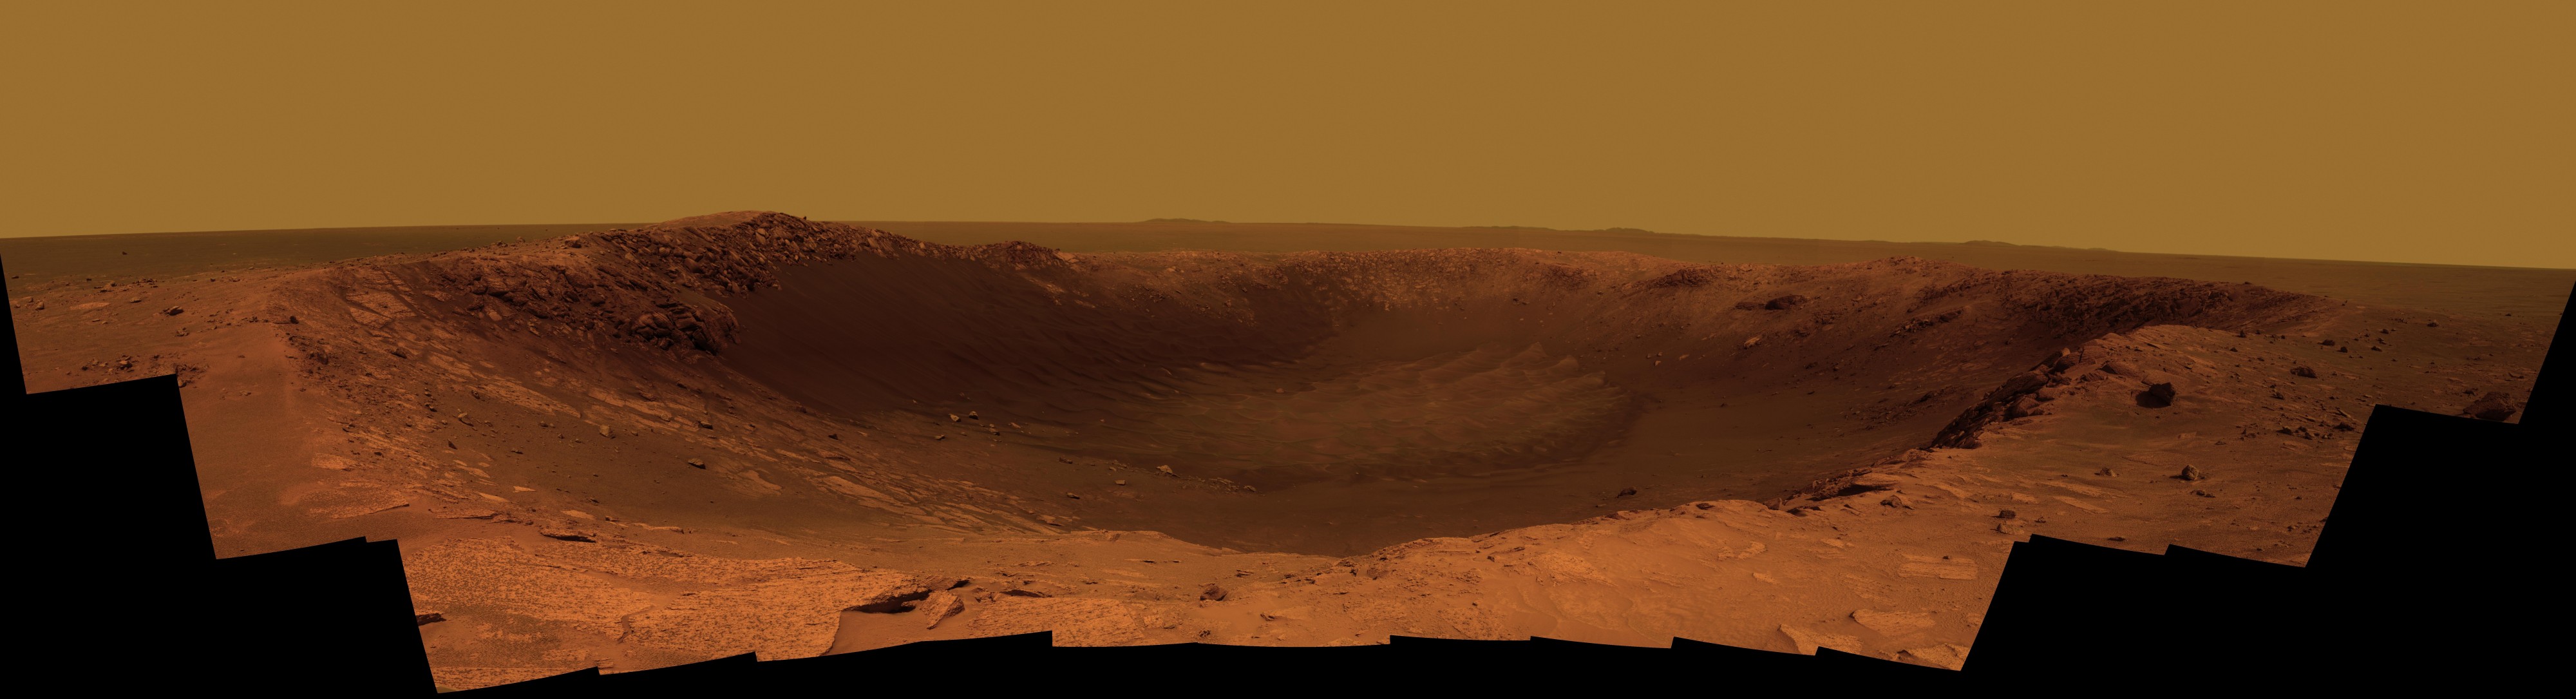 Santa Maria Crater (Mars)